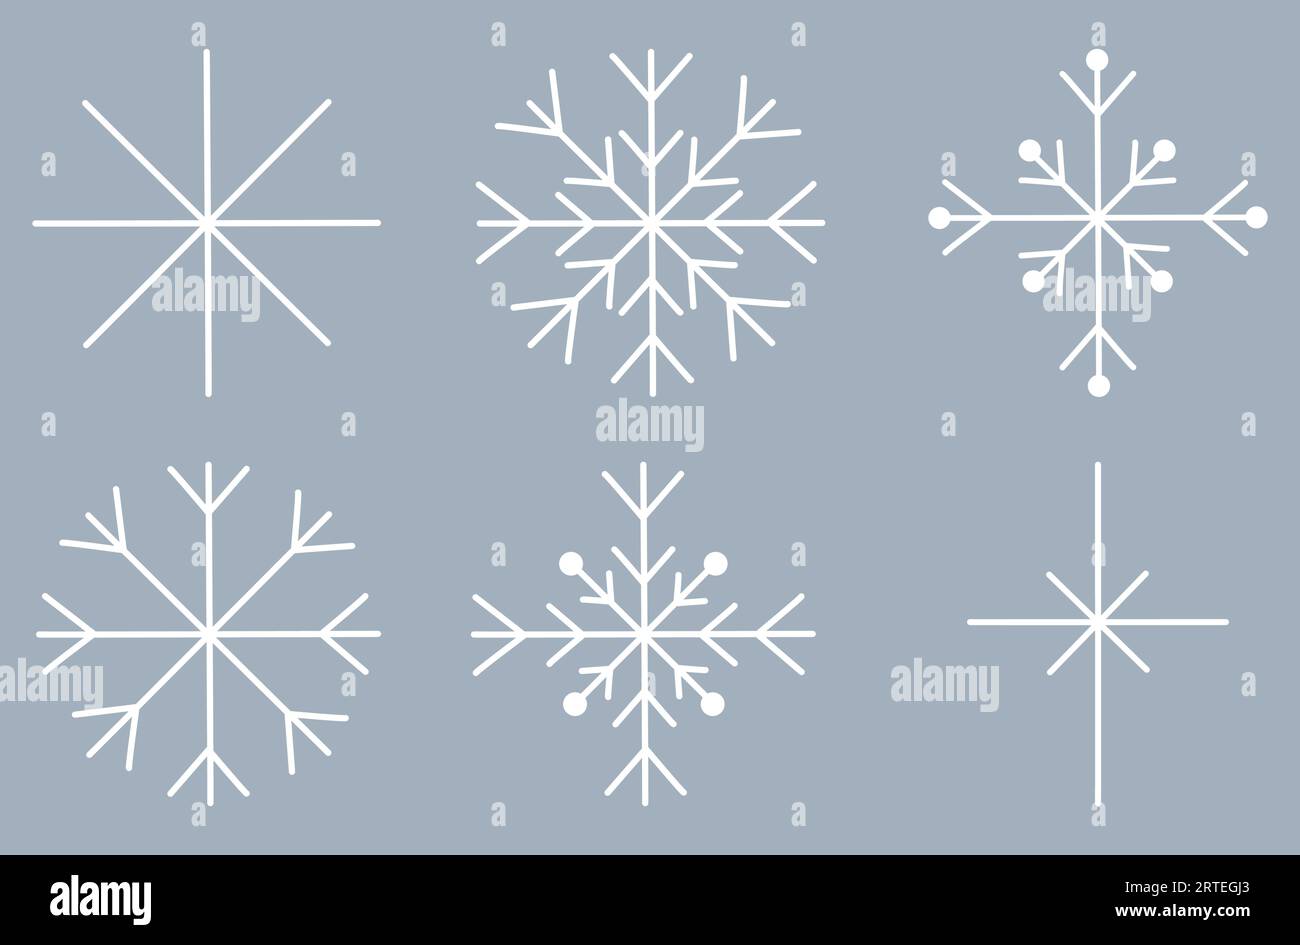 Set aus verschiedenen Schneeflocken, Winterdesign-Element, flache Vektorillustration Stock Vektor